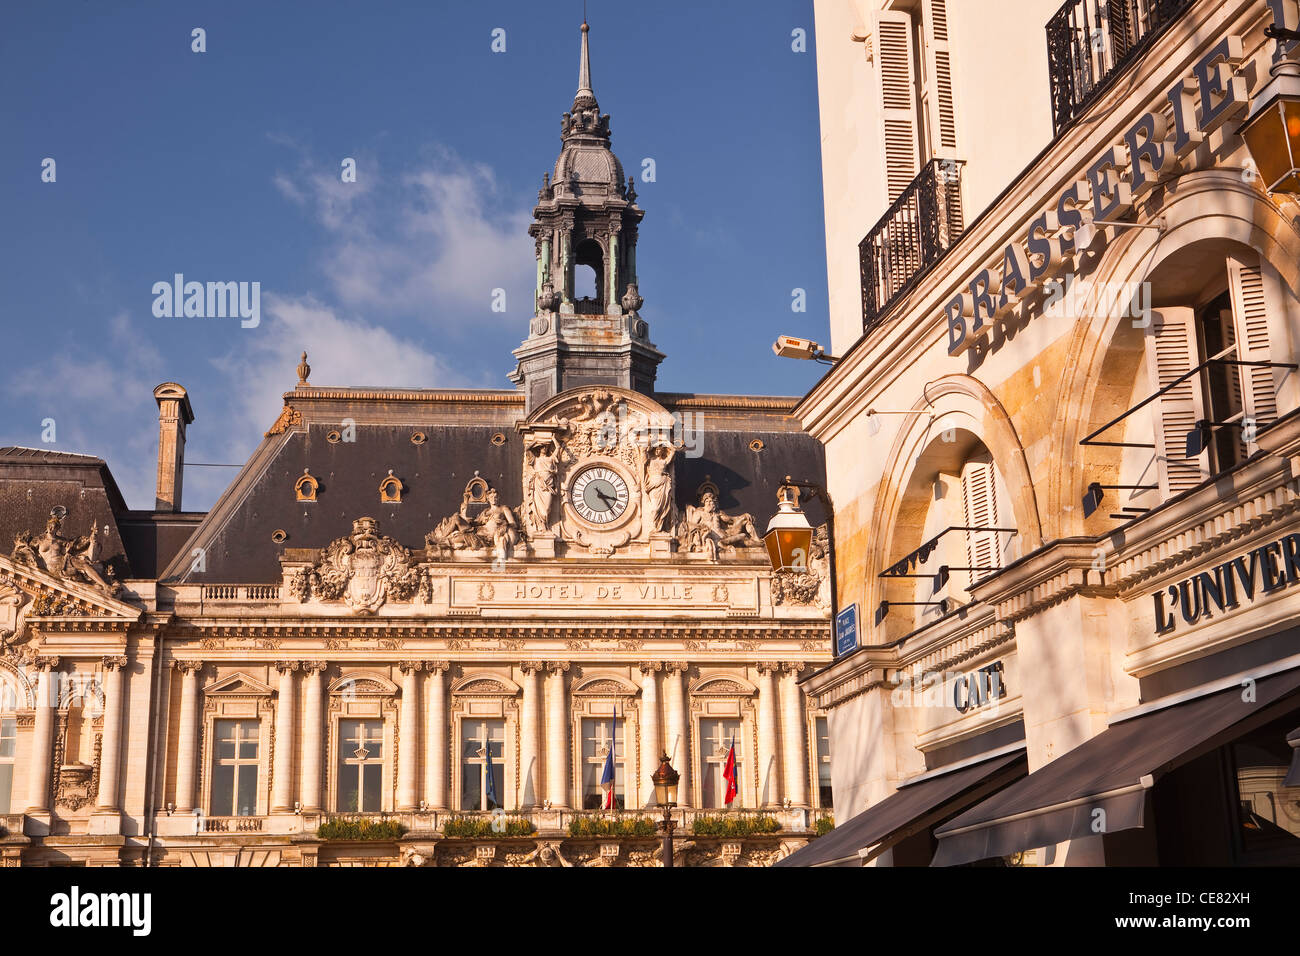 La facciata dell'Hotel de Ville o town hall a Tours in Francia. È stato progettato da Victor Laloux. Foto Stock